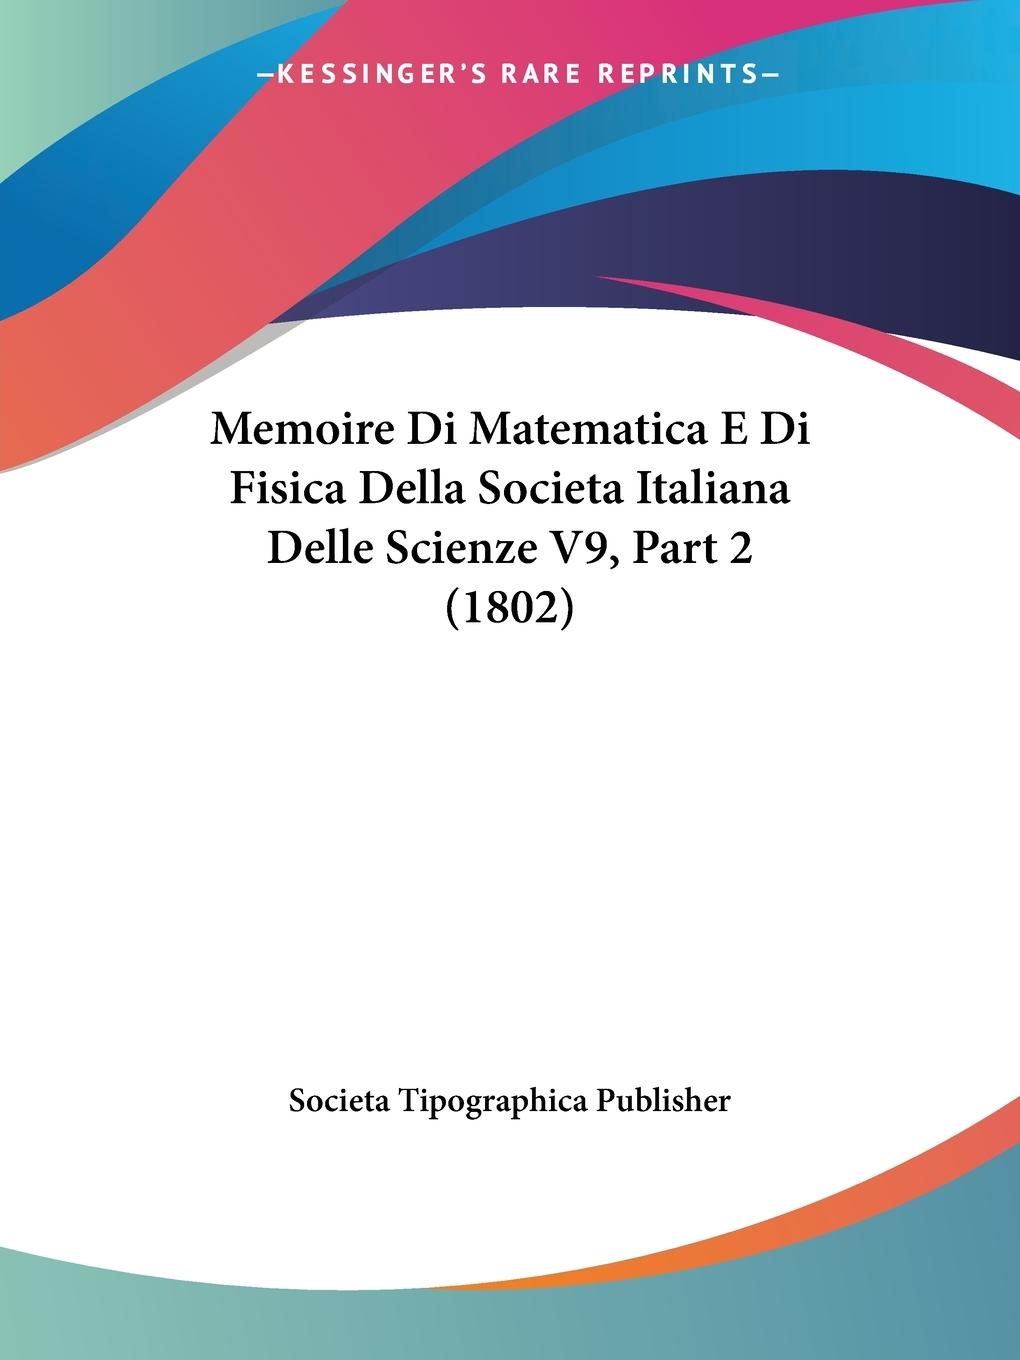 Memoire Di Matematica E Di Fisica Della Societa Italiana Delle Scienze V9, Part 2 (1802) - Societa Tipographica Publisher